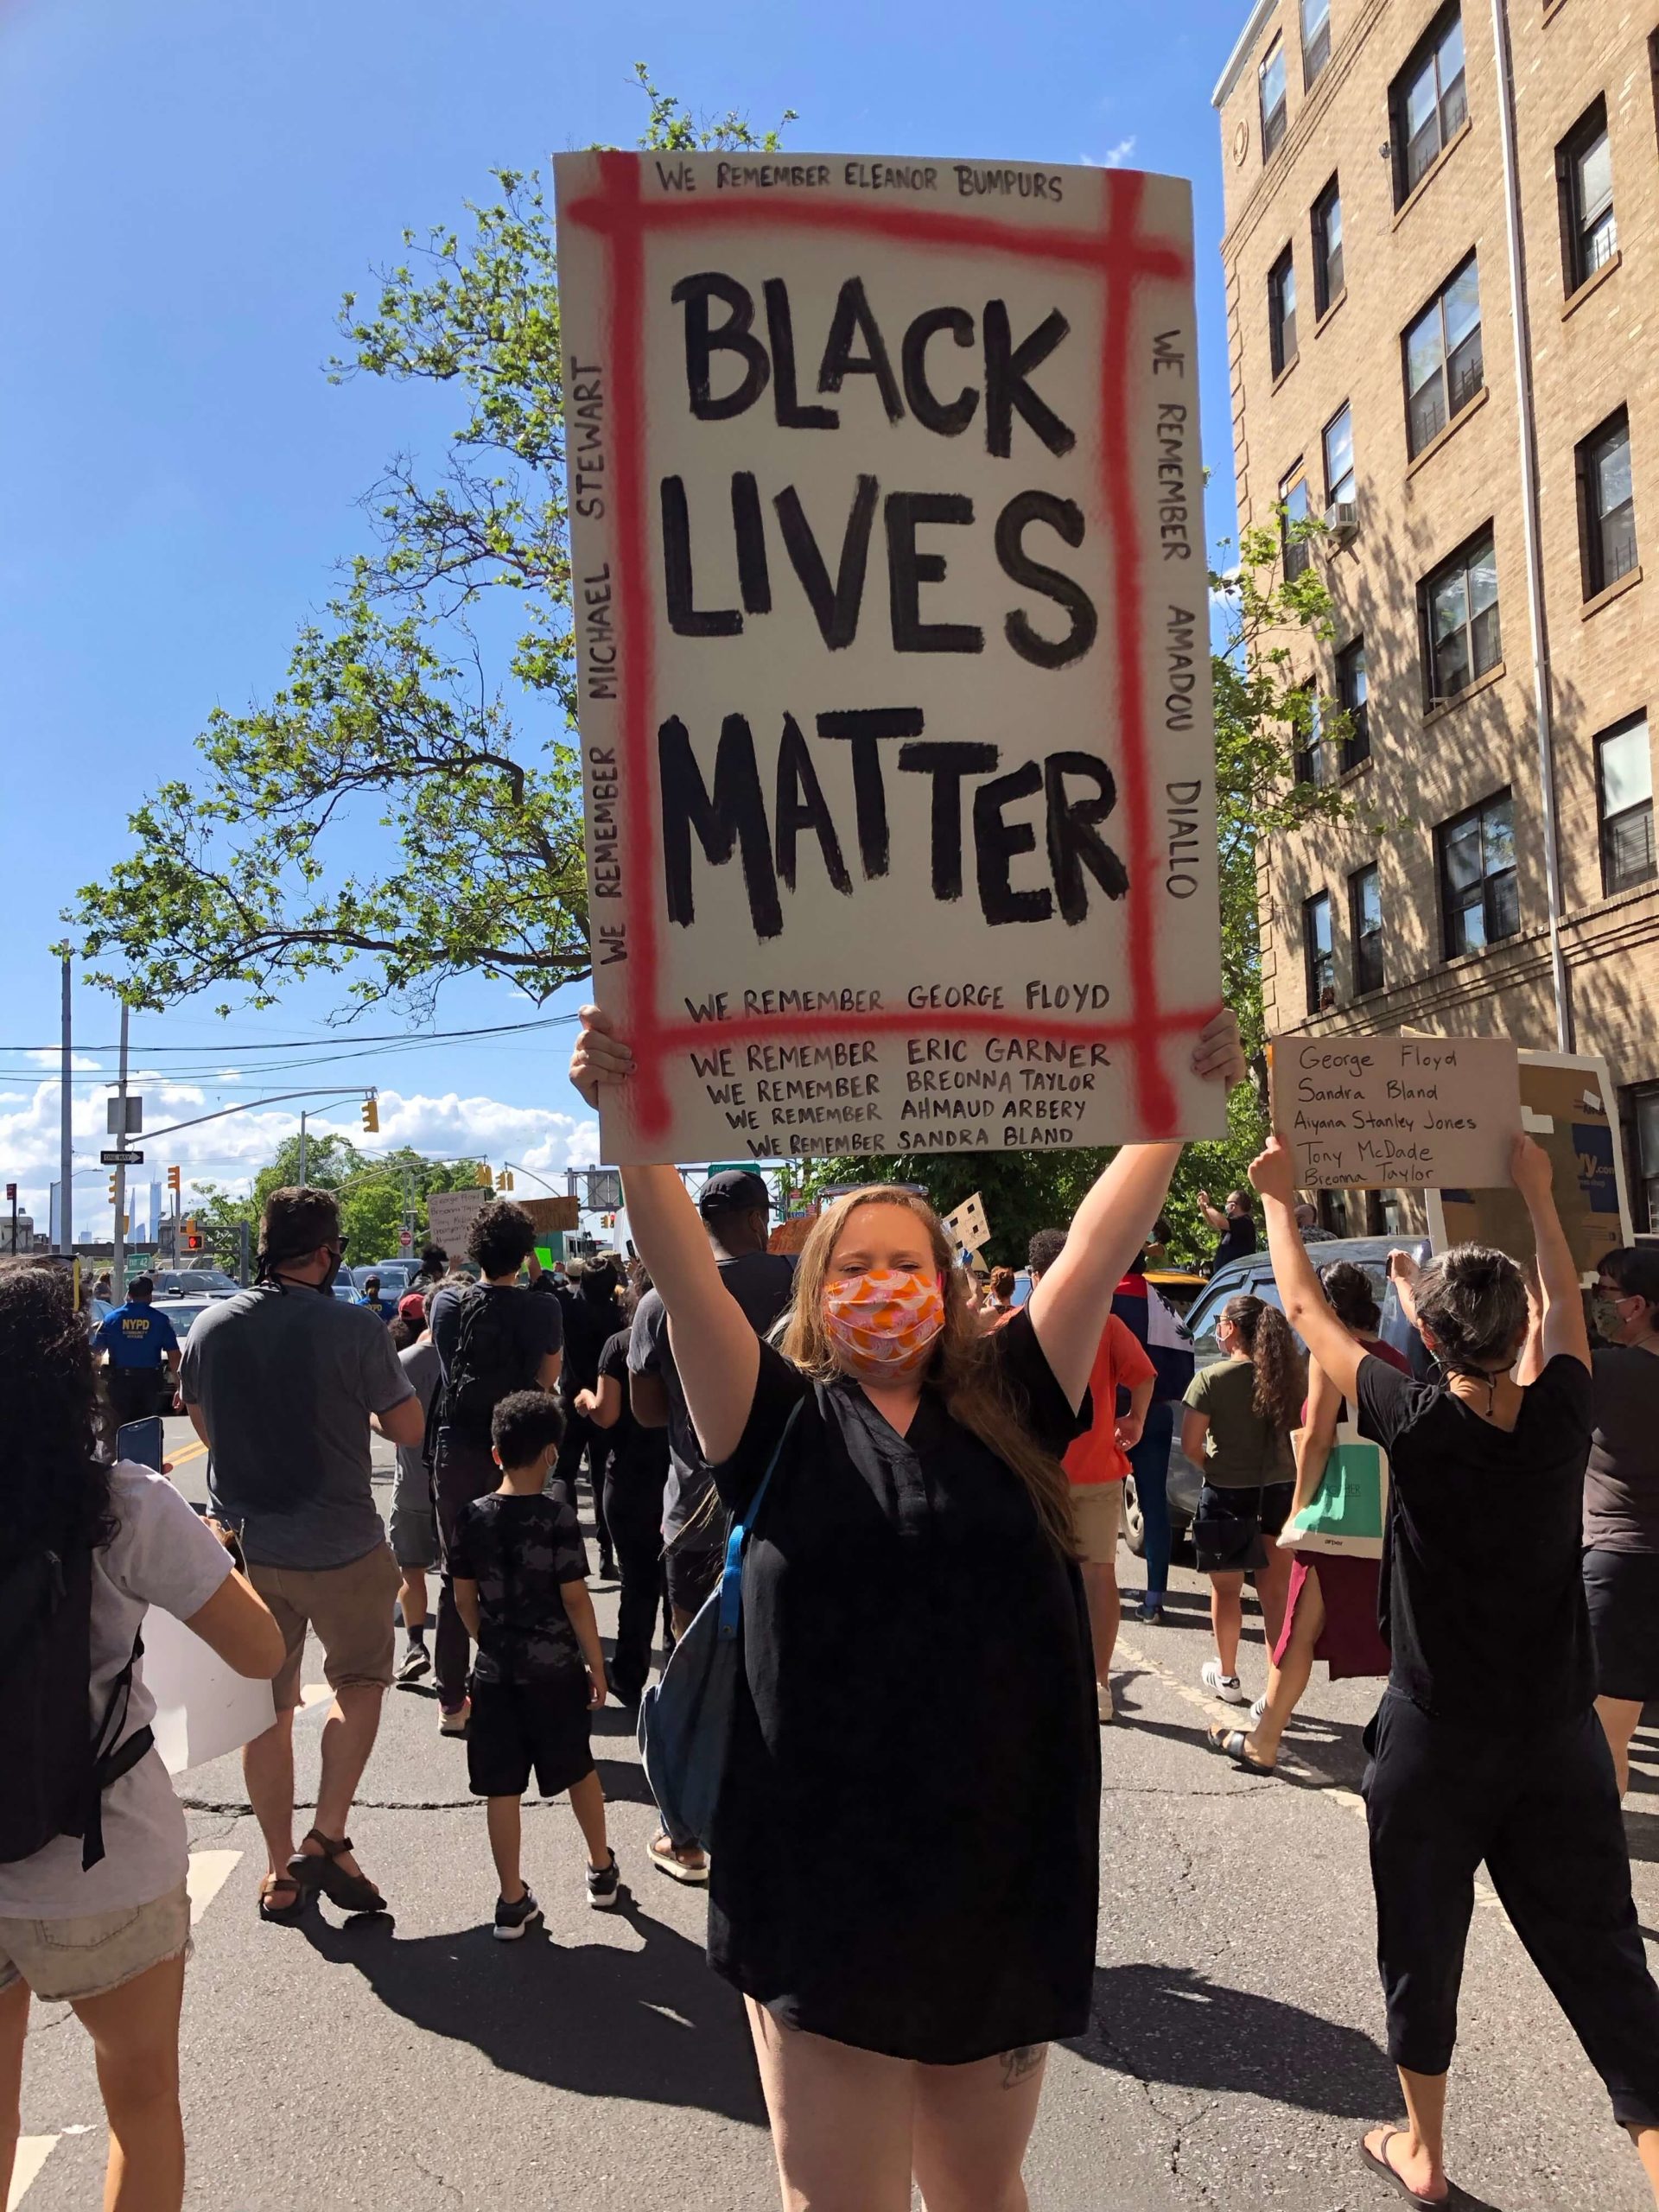 Le proteste negli Stati Uniti ed il movimento BlackLivesMatter